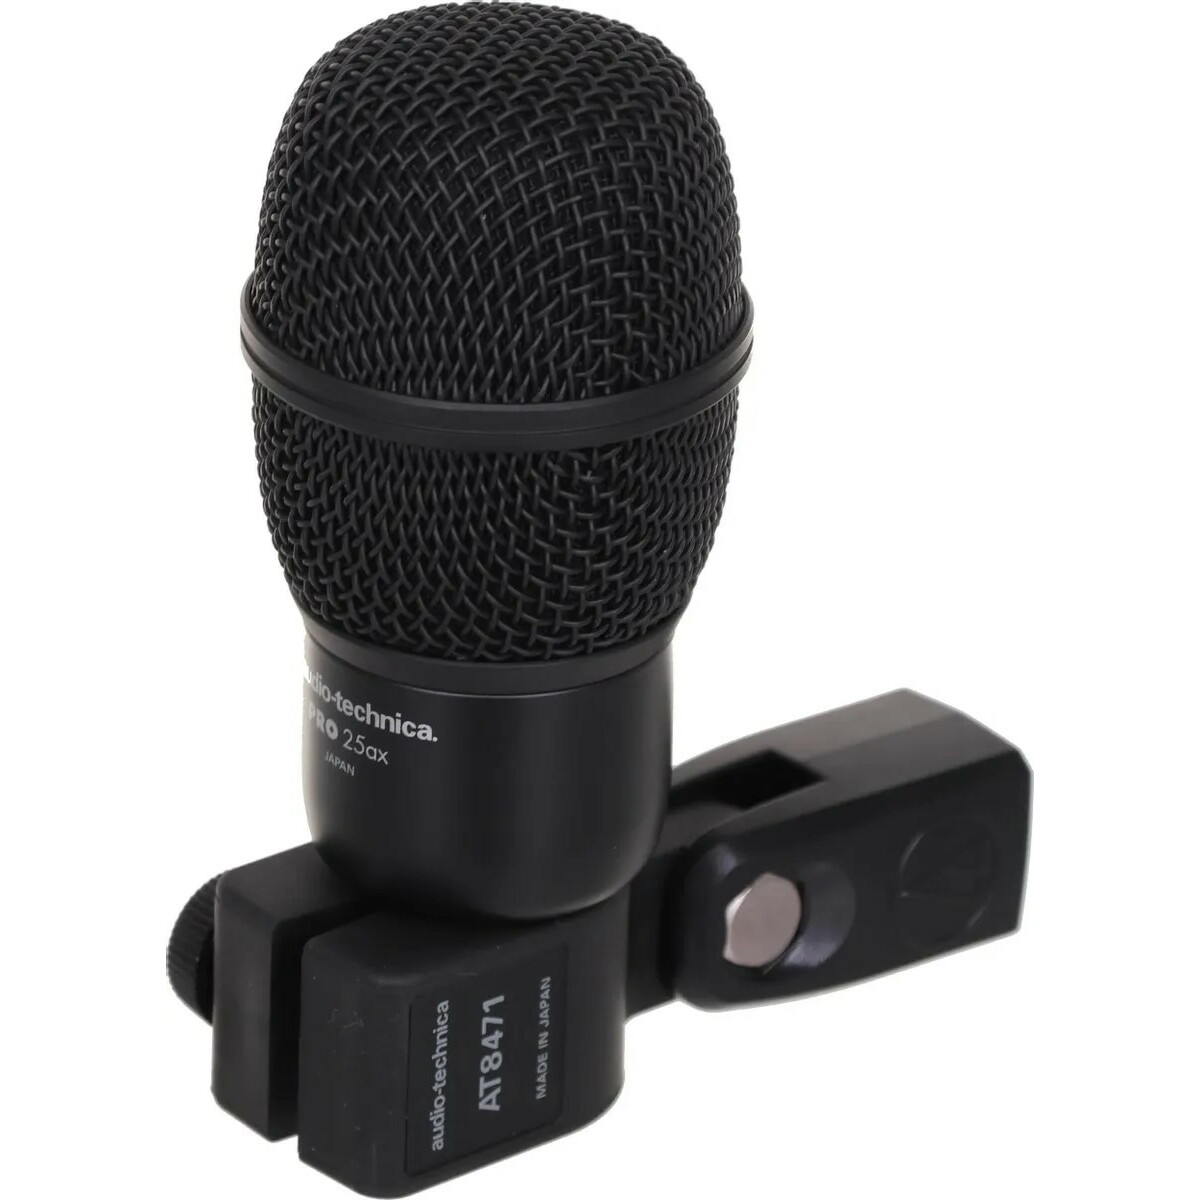 Микрофон проводной Audio-Technica PRO25AX, черный